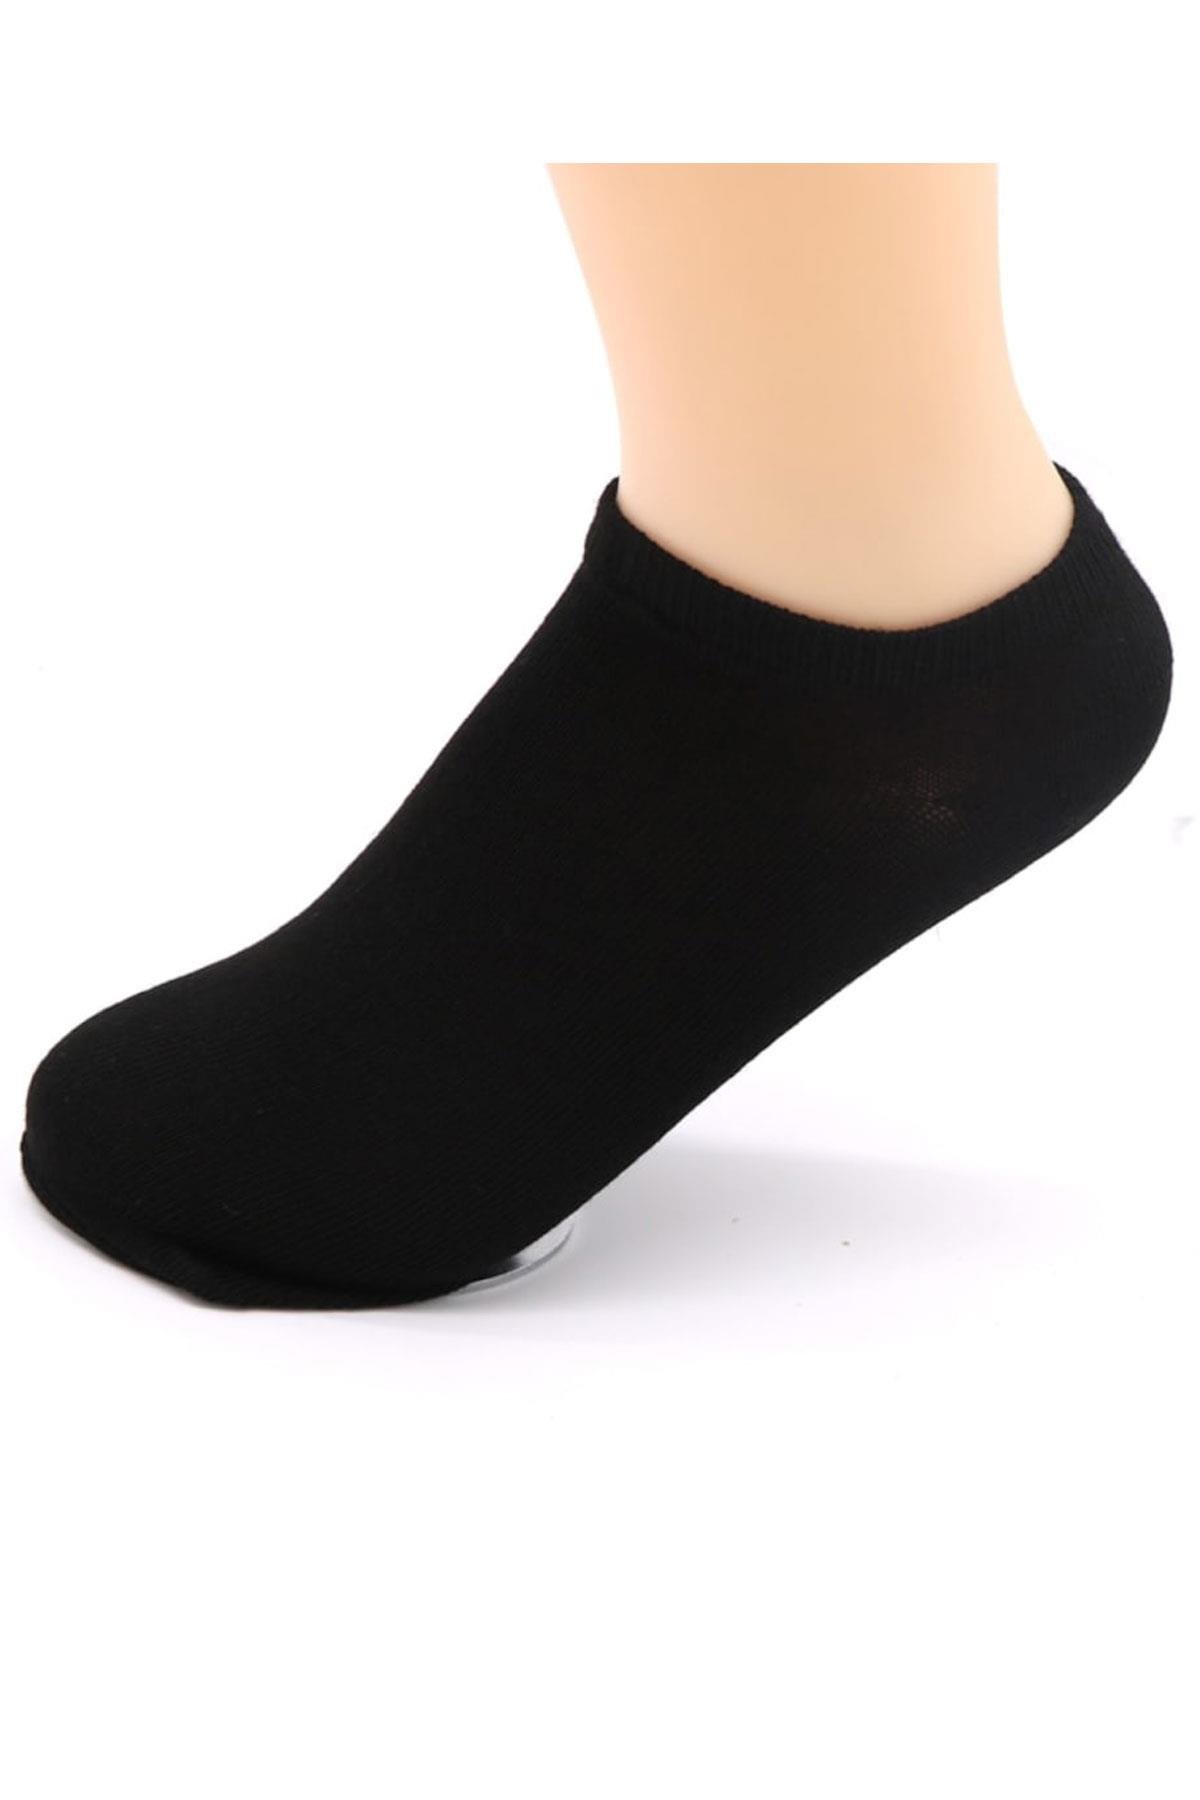 Короткие черные носки. Короткие носки. Носки черные женские. Носки женские короткие черные. Носки короткие однотонные.